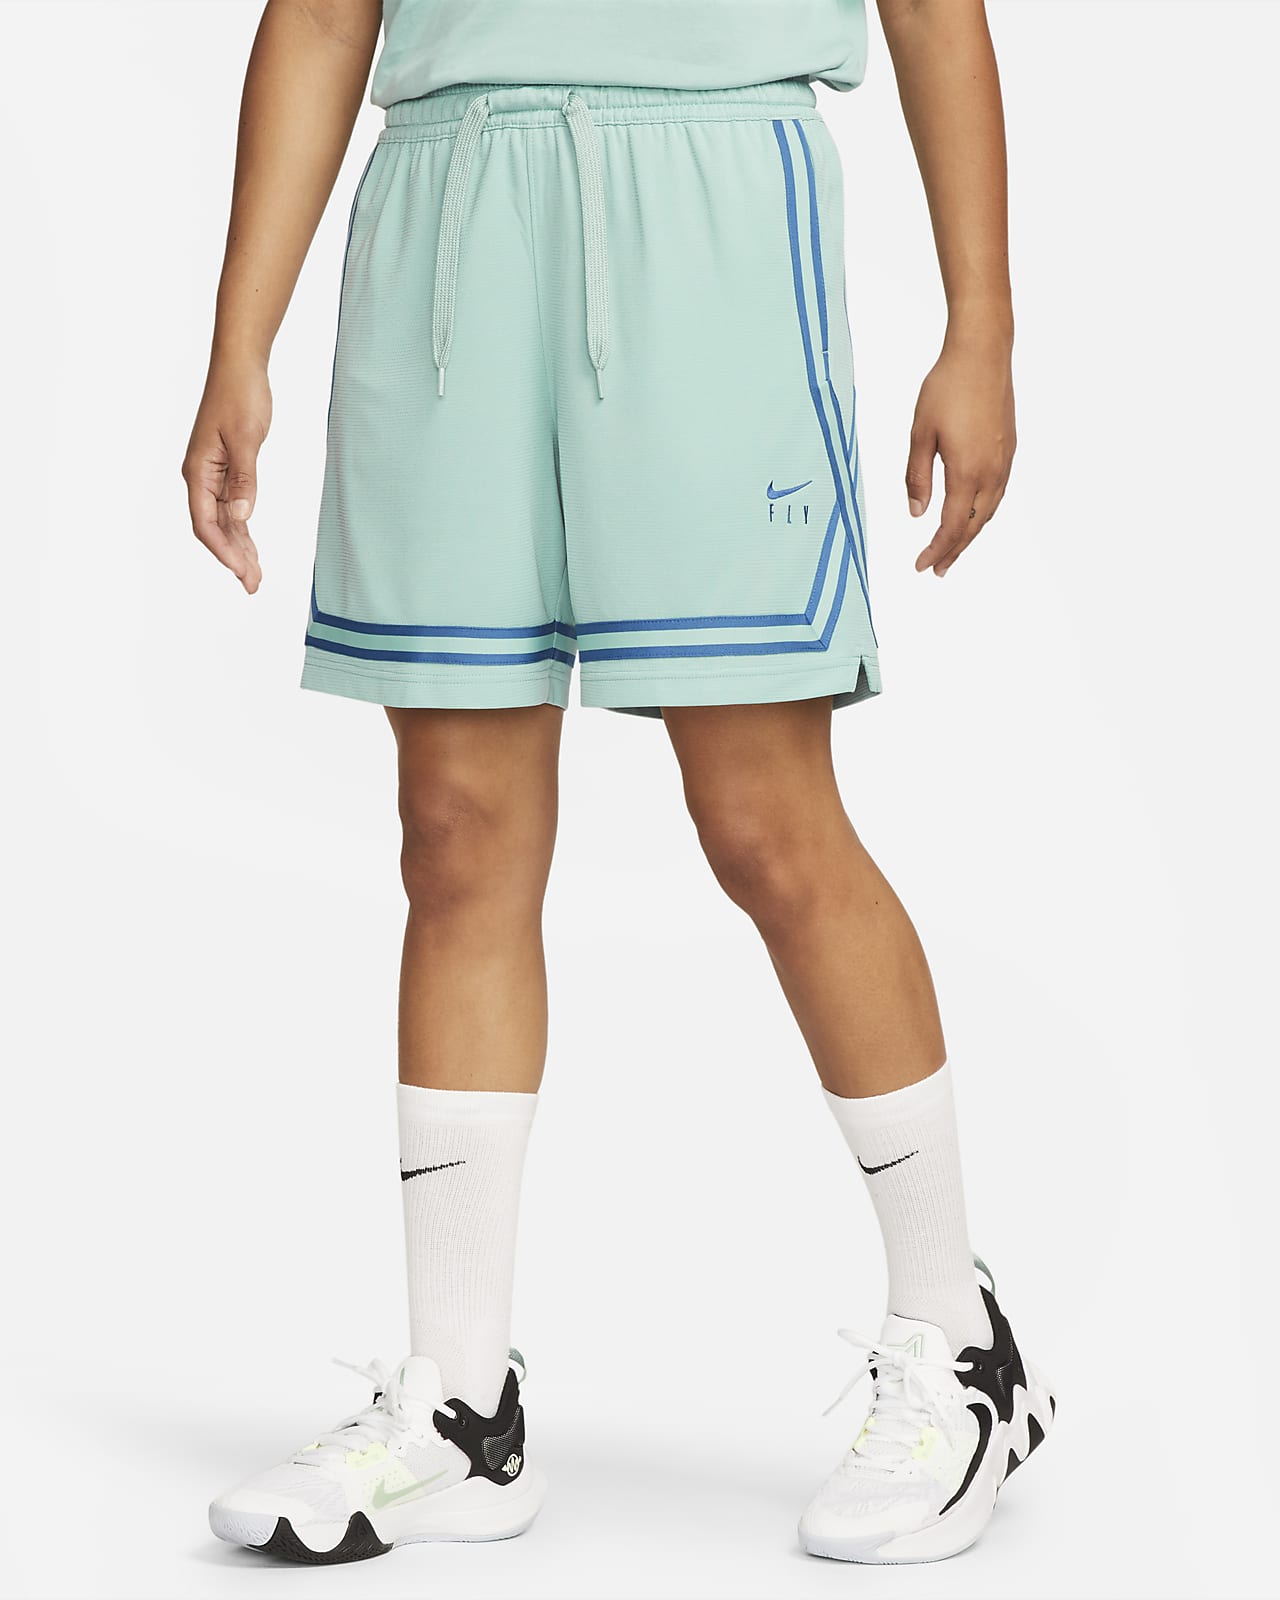 Confirmación Perseguir Anfibio Nike Fly Crossover Women's Basketball Shorts. Nike.com